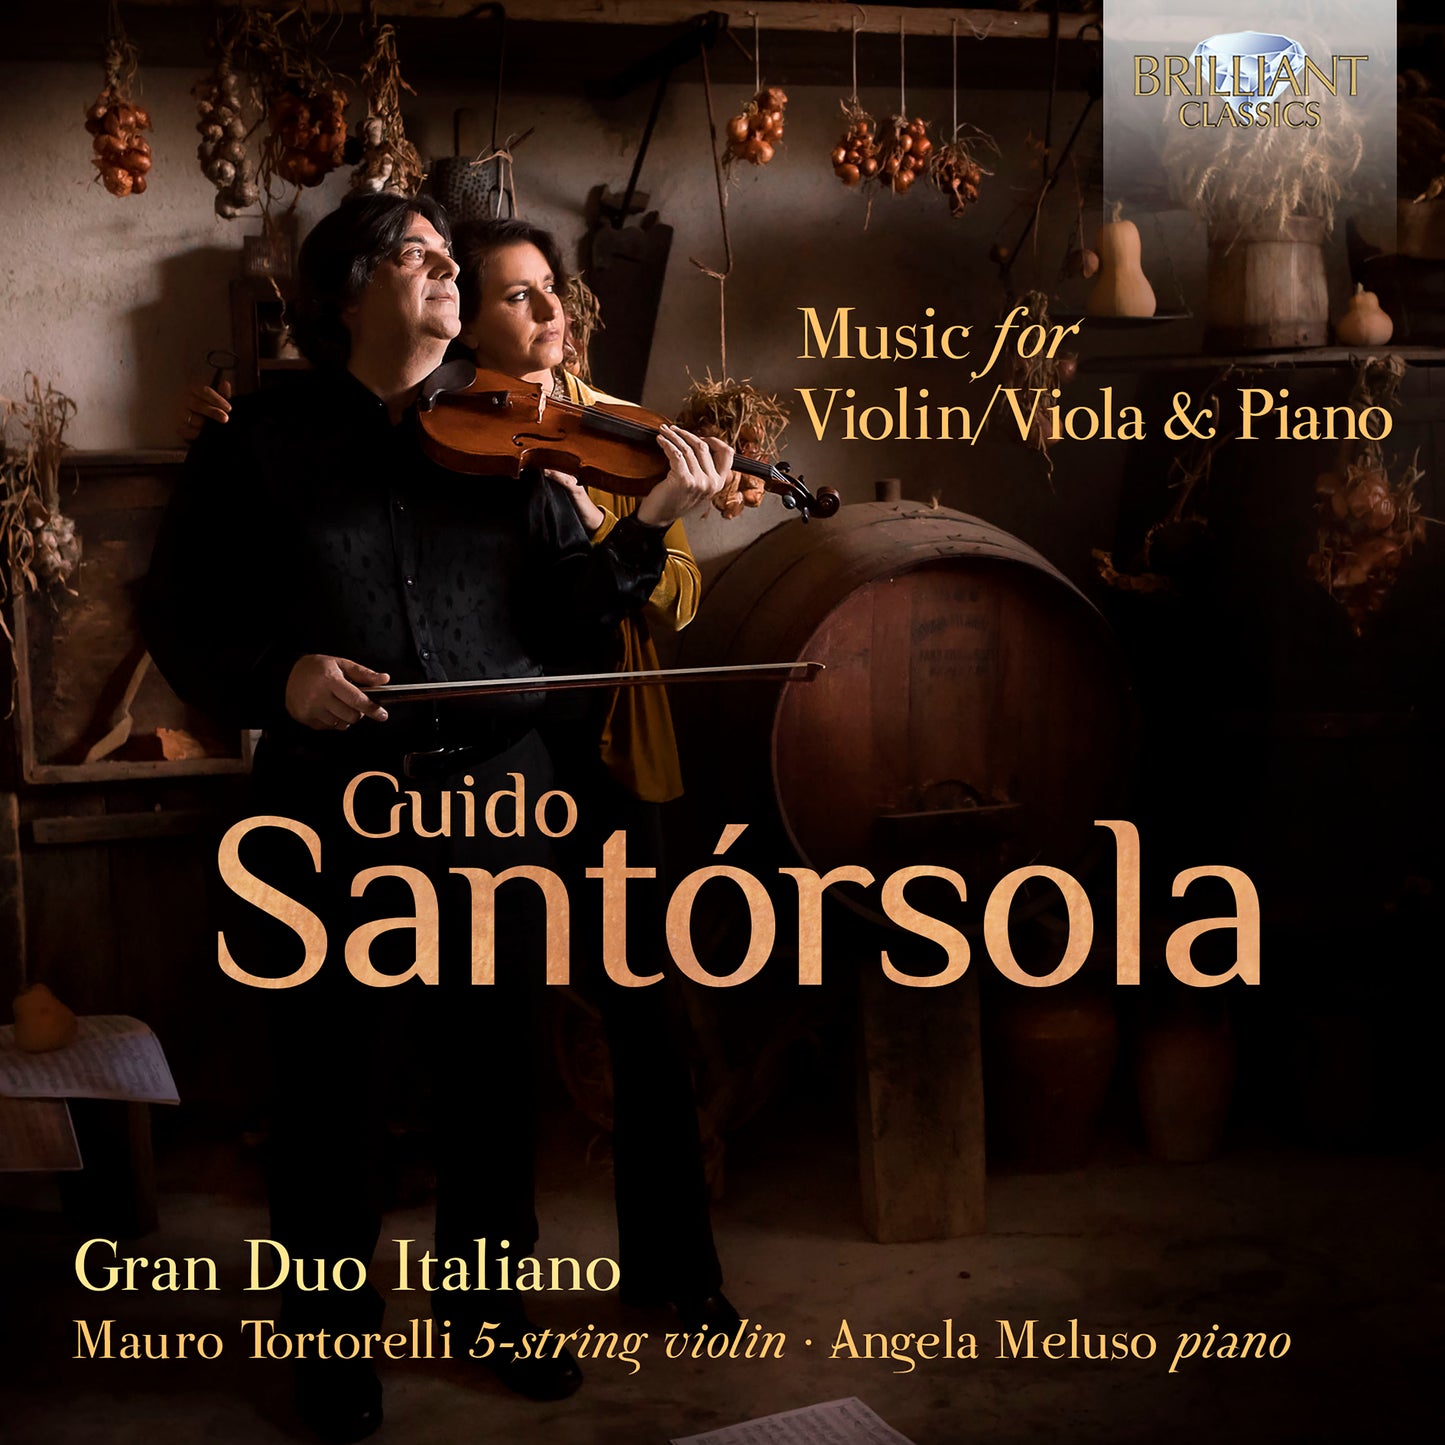 Santorsola: Music For Violin/Viola & Piano  Gran Duo Italiano, Mauro Tortorelli, Angela Meluso